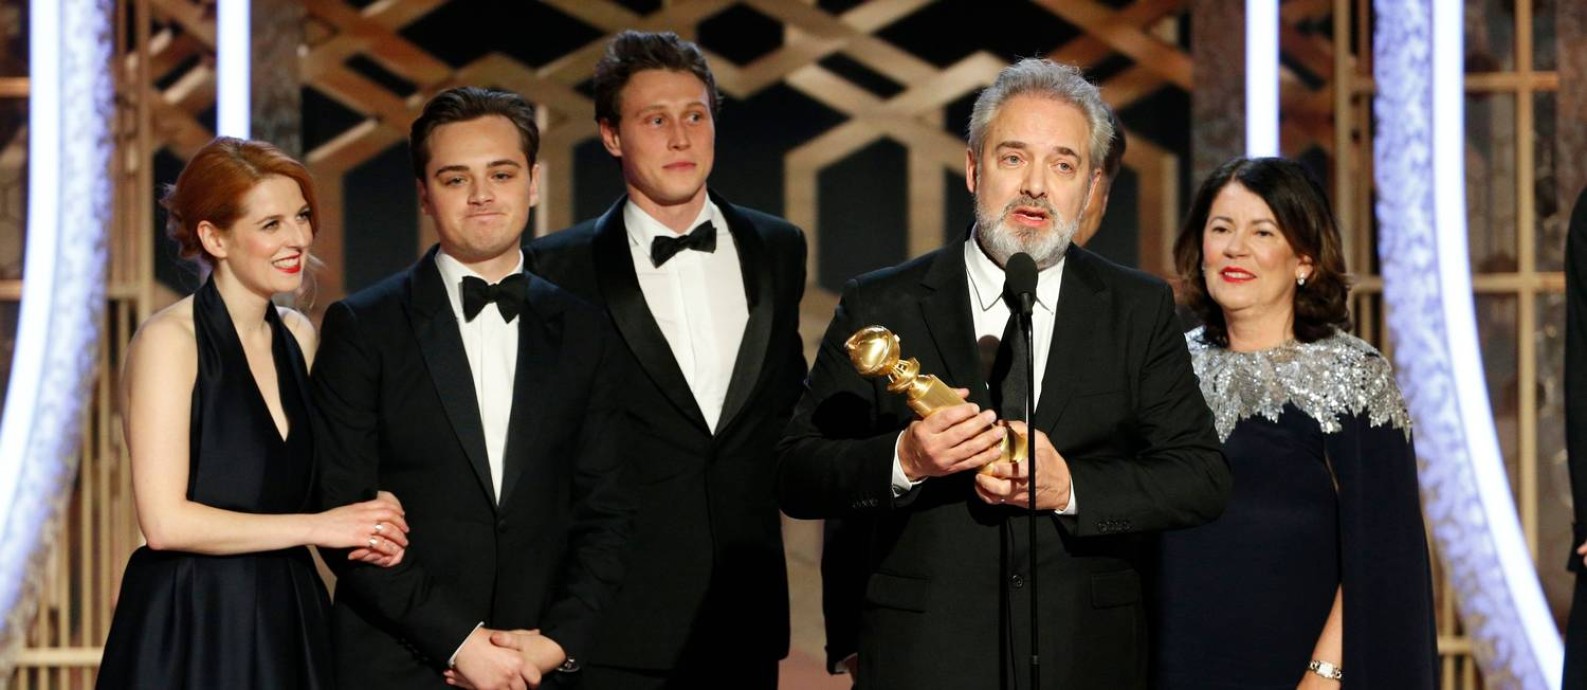 Com um Globo de Ouro na mão, o diretor britânico Sam Mendes celebra ao lado da equipe a dupla vitória de “1917”, que venceu os principais prêmios da noite, direção e filme de drama, desbancando Scorsese e seu “O irlandês” Foto: HANDOUT / REUTERS